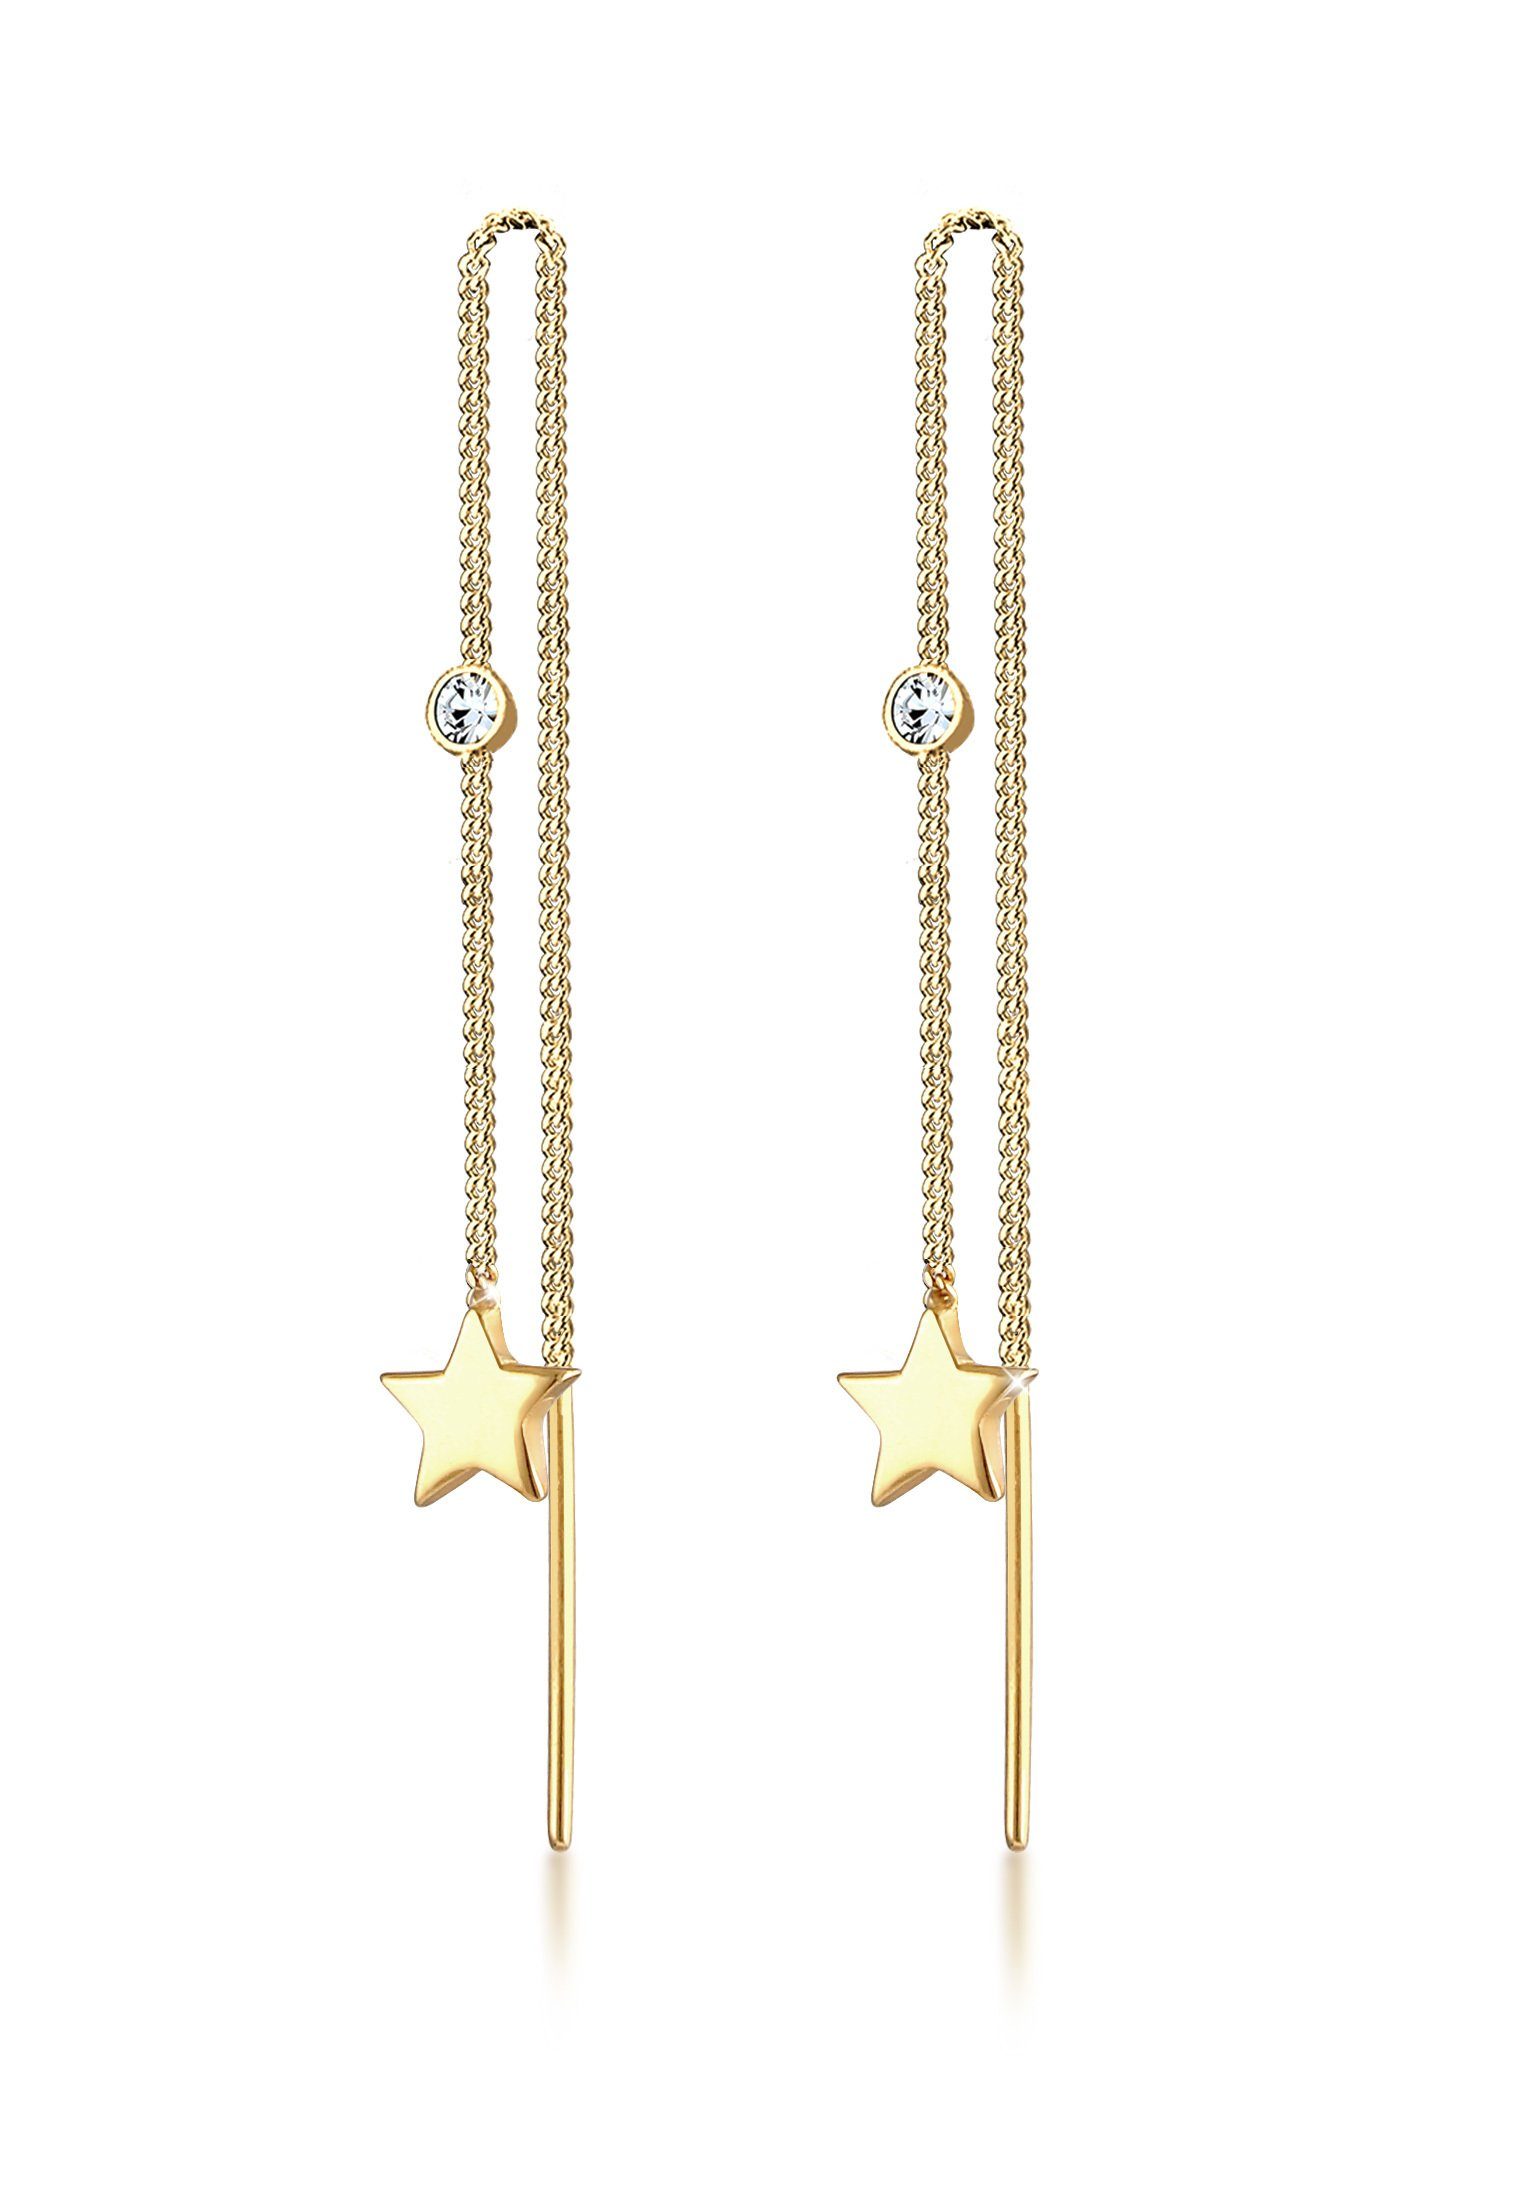 Elli Paar Ohrhänger Sterne Kristalle Durchzieher 925 Silber, Sterne, Astro Gold